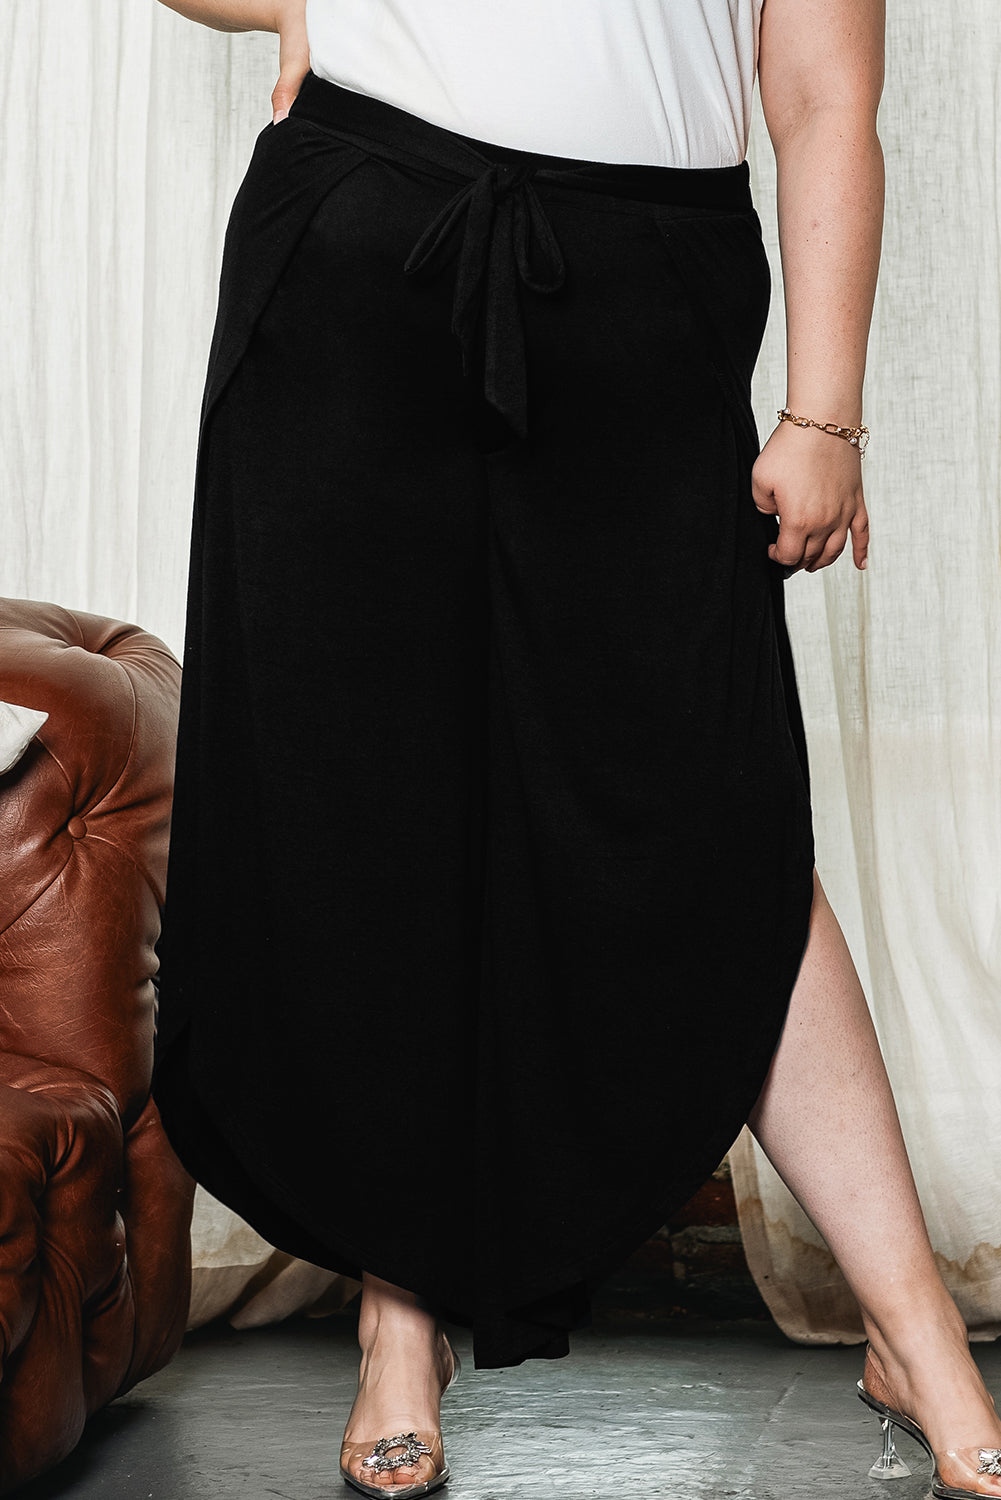 Crne široke hlače u obliku tulipana s prednjom kravatom veće veličine